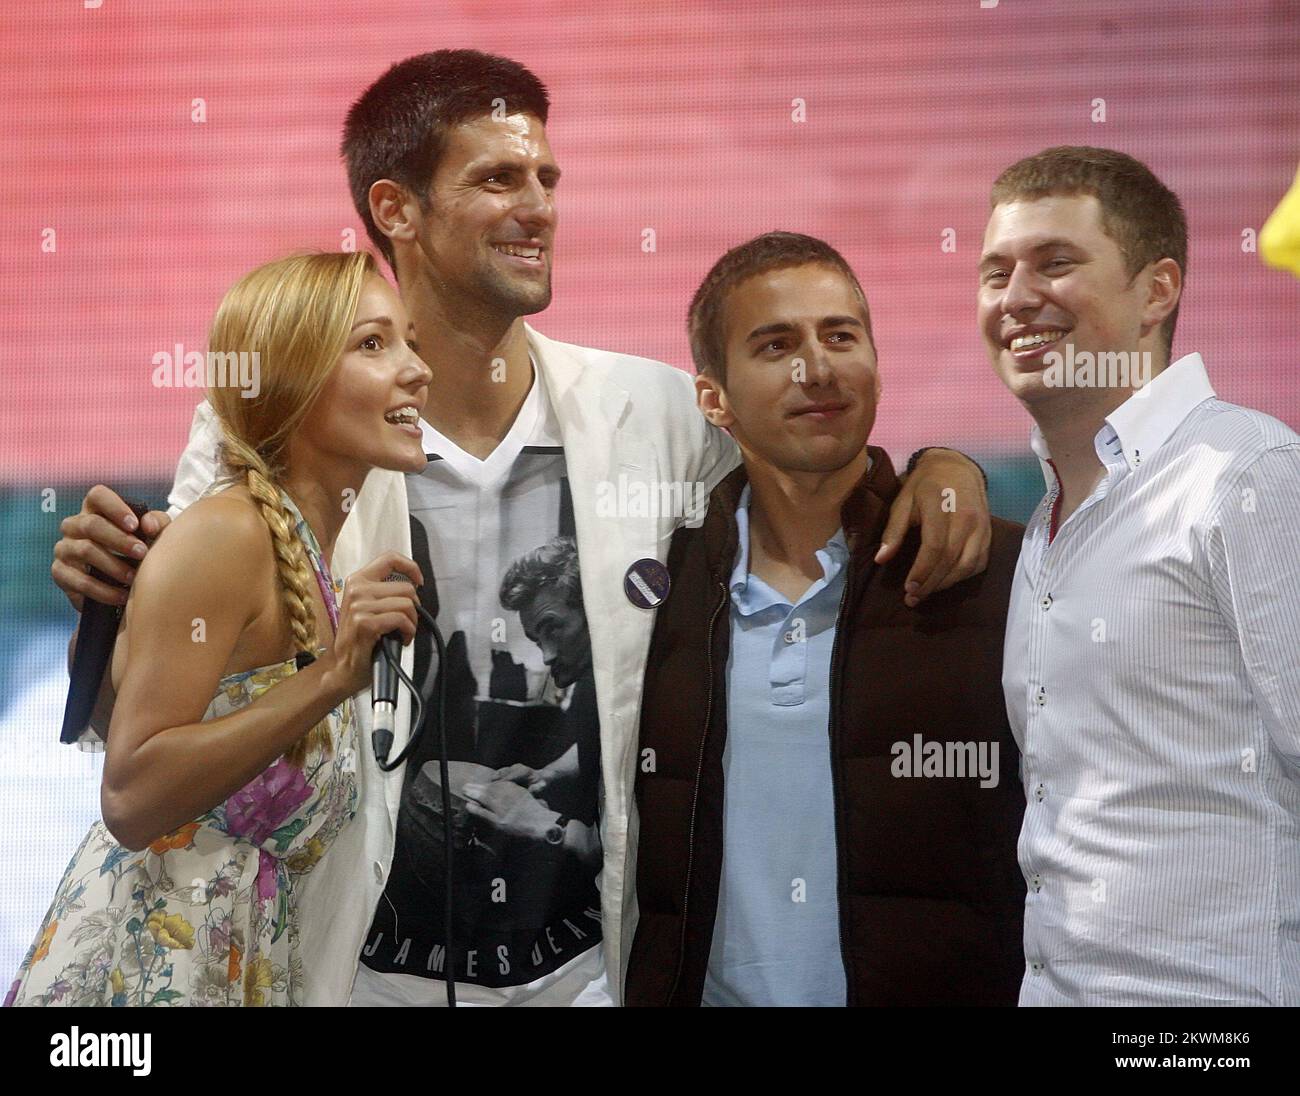 Novak Djokovic con la sua ragazza Jelena Ristic e fratello Djordje Djokovic (centro). Novak Djokovic, che ha vinto domenica a Wimbledon e ora il tennis mondiale n° 1, ha ricevuto il benvenuto di un eroe quando è tornato a Belgrado, dove decine di migliaia di persone hanno un eroe Benvenuto. Molti giovani si erano riuniti al di fuori del parlamento serbo, sventolando bandiere di Serbia e cartelli che recitavano: 'Nola, noi ti amiamo', o 'Nole, il re', riferendosi al soprannome del giocatore. 04.07.2011, Belgrado, Serbia. Foto: HaloPix/Pixsell Foto Stock